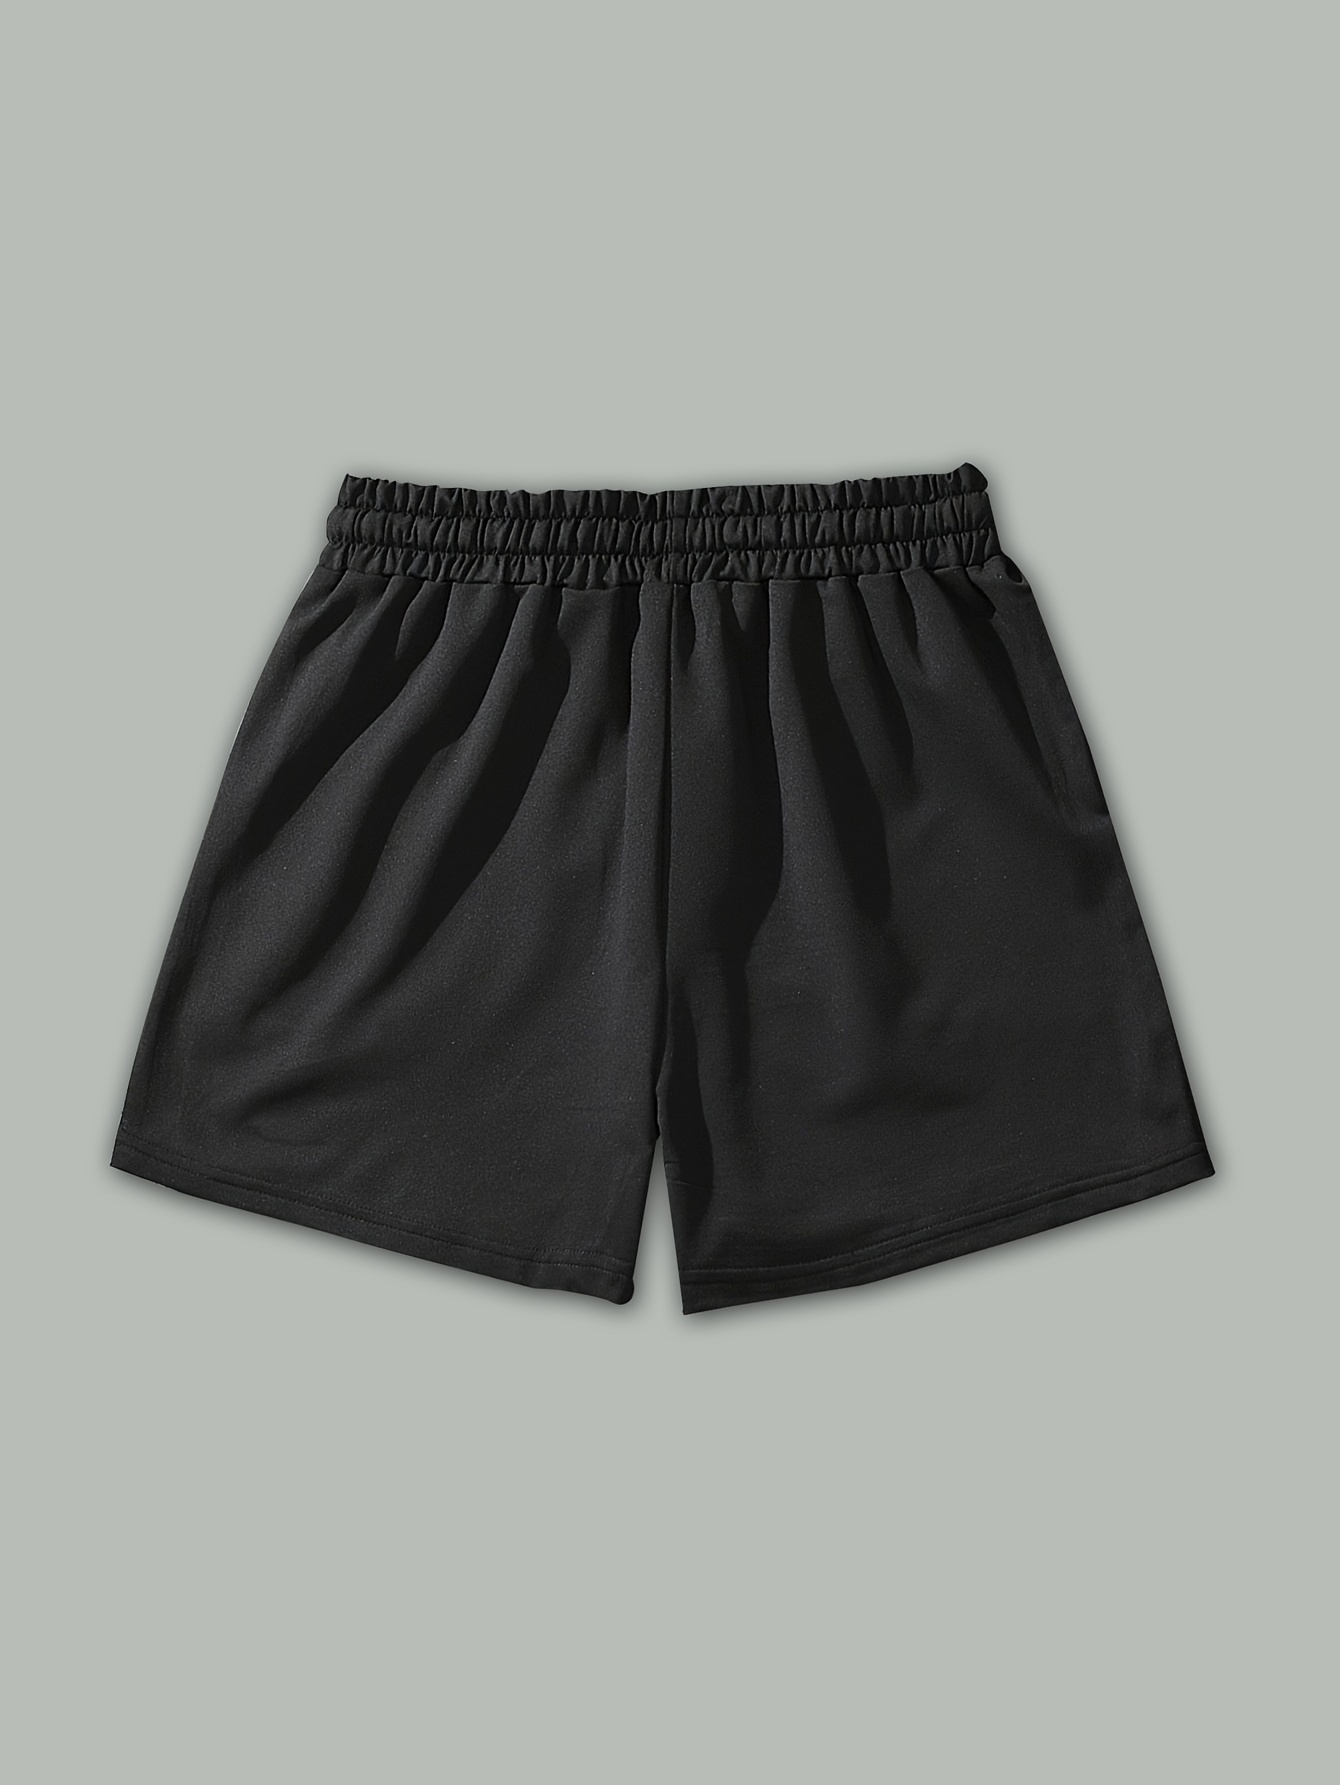 Summer Comfy Short Pants - Men - ComfyClo-Official